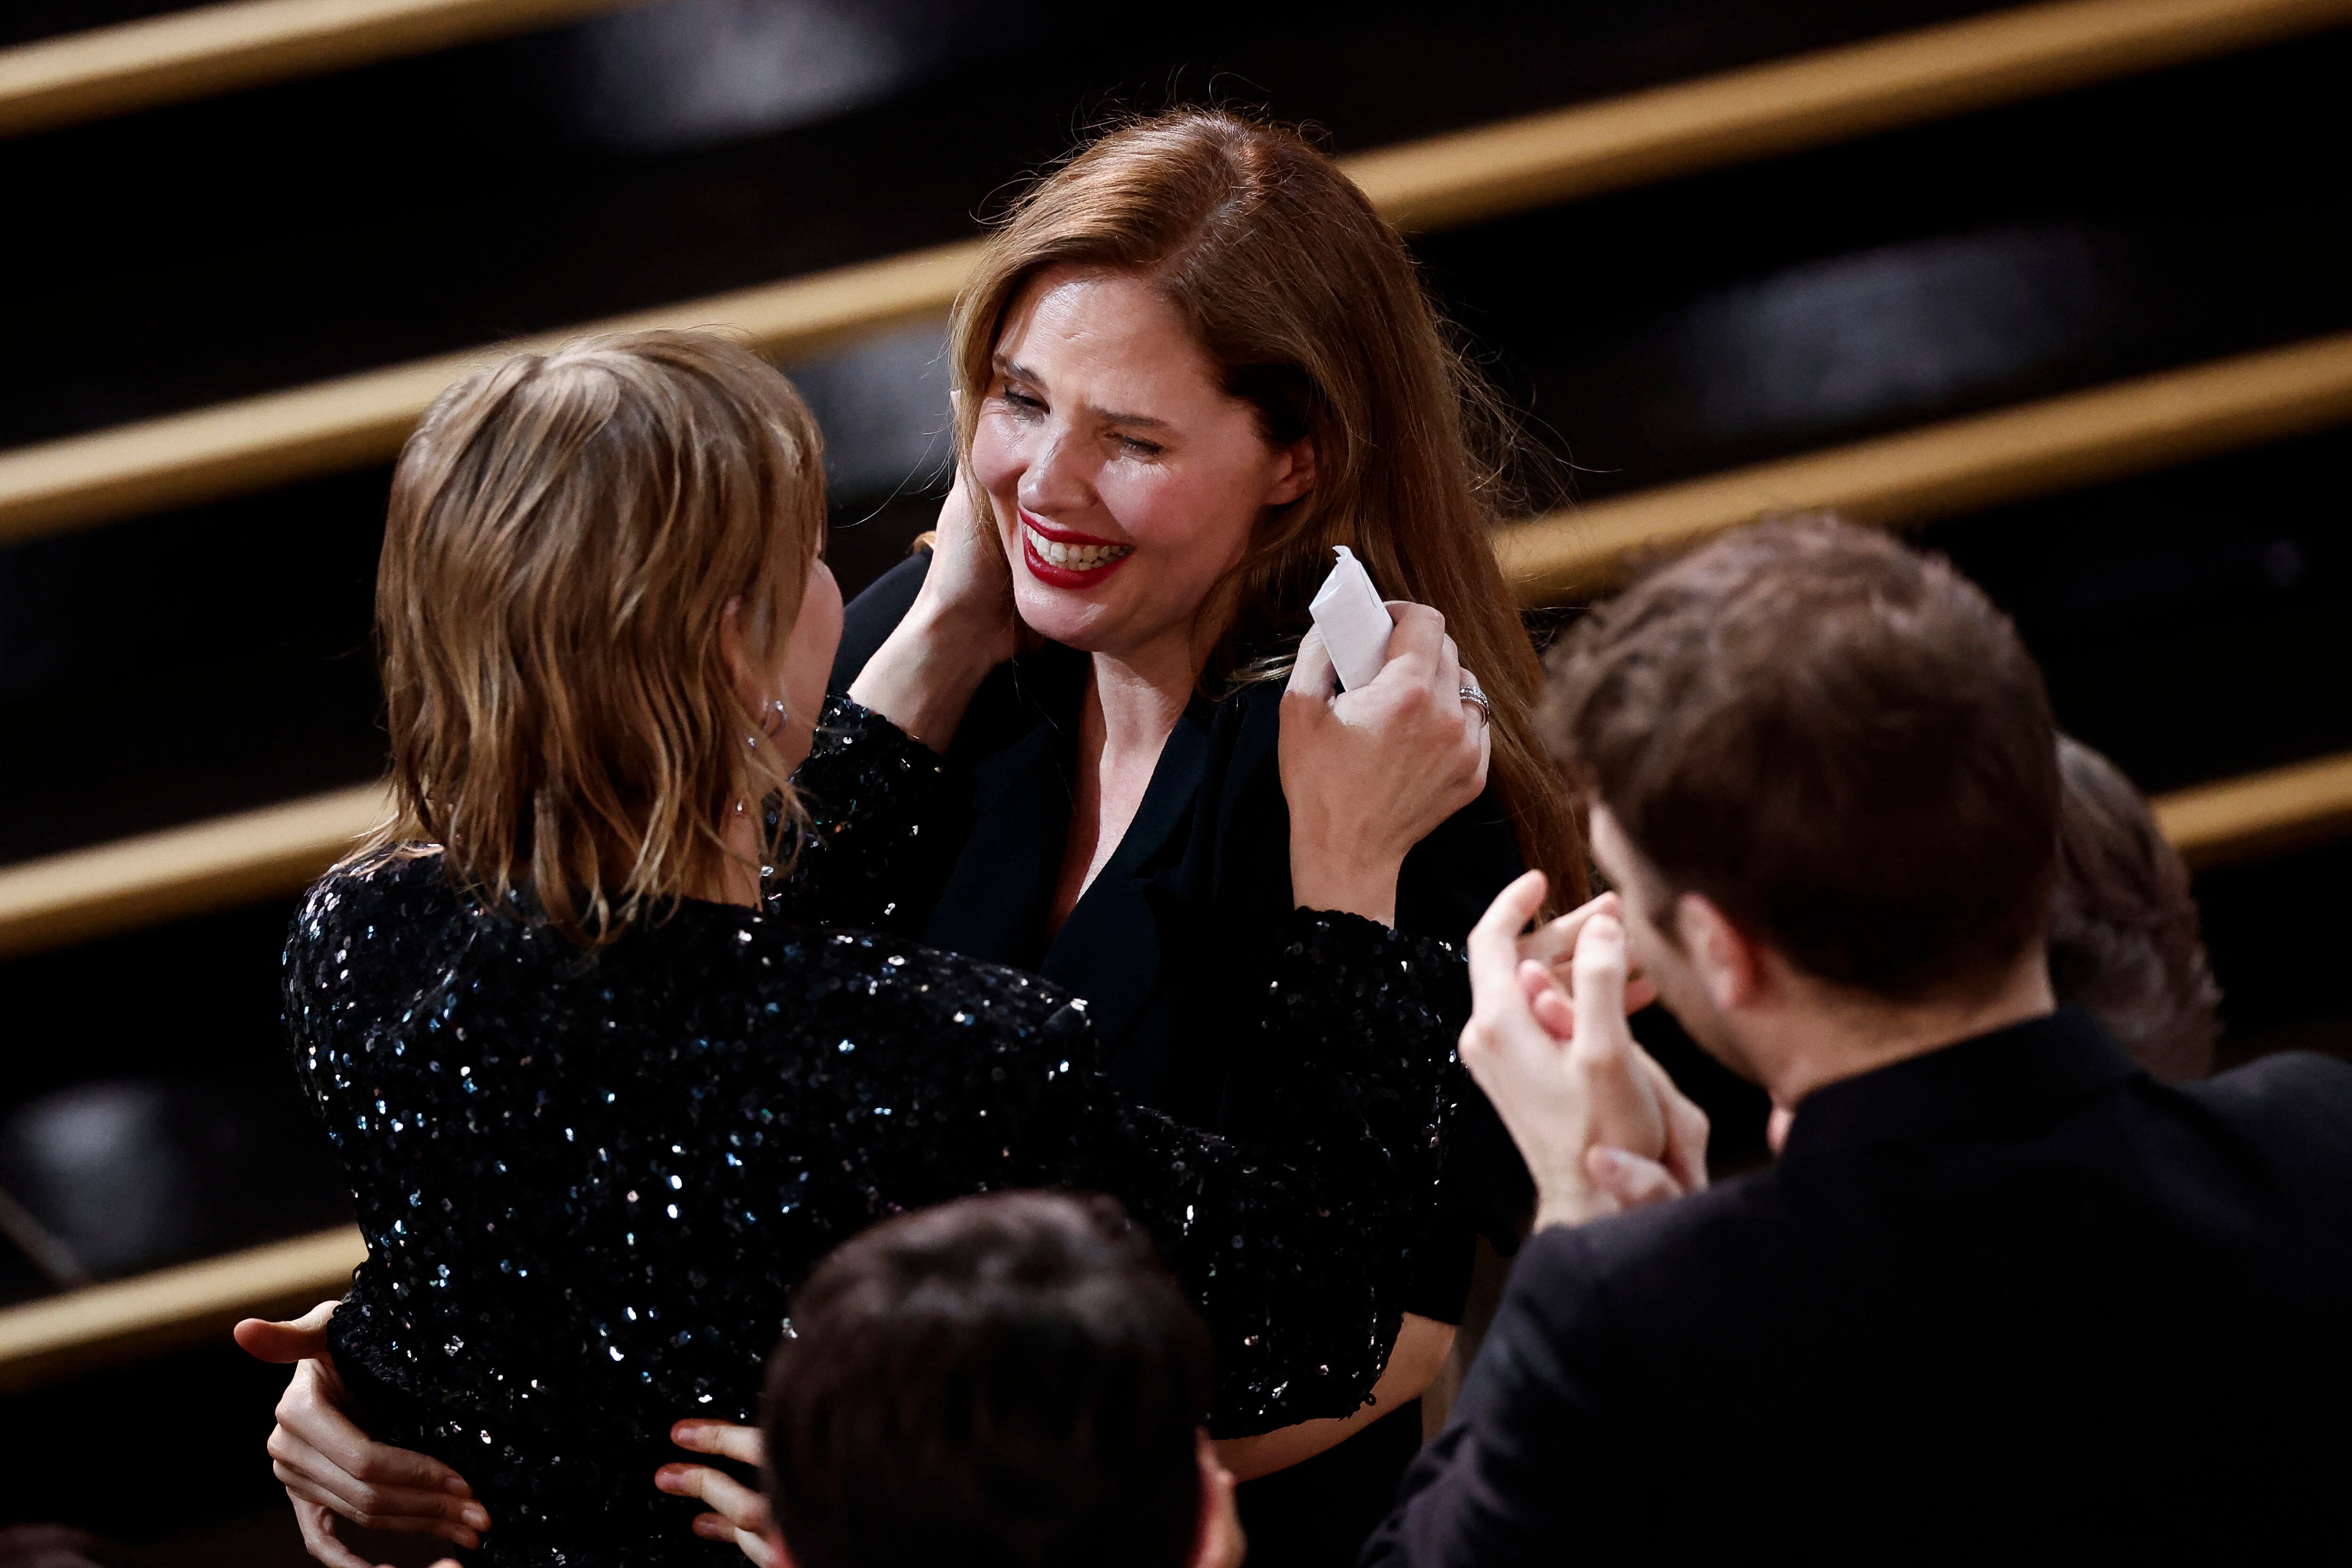 La actriz Sandra Hüller (de espaldas, a la izquierda) recibe la felicitación de Justine Triet tras ganar el premio a la mejor protagonista.